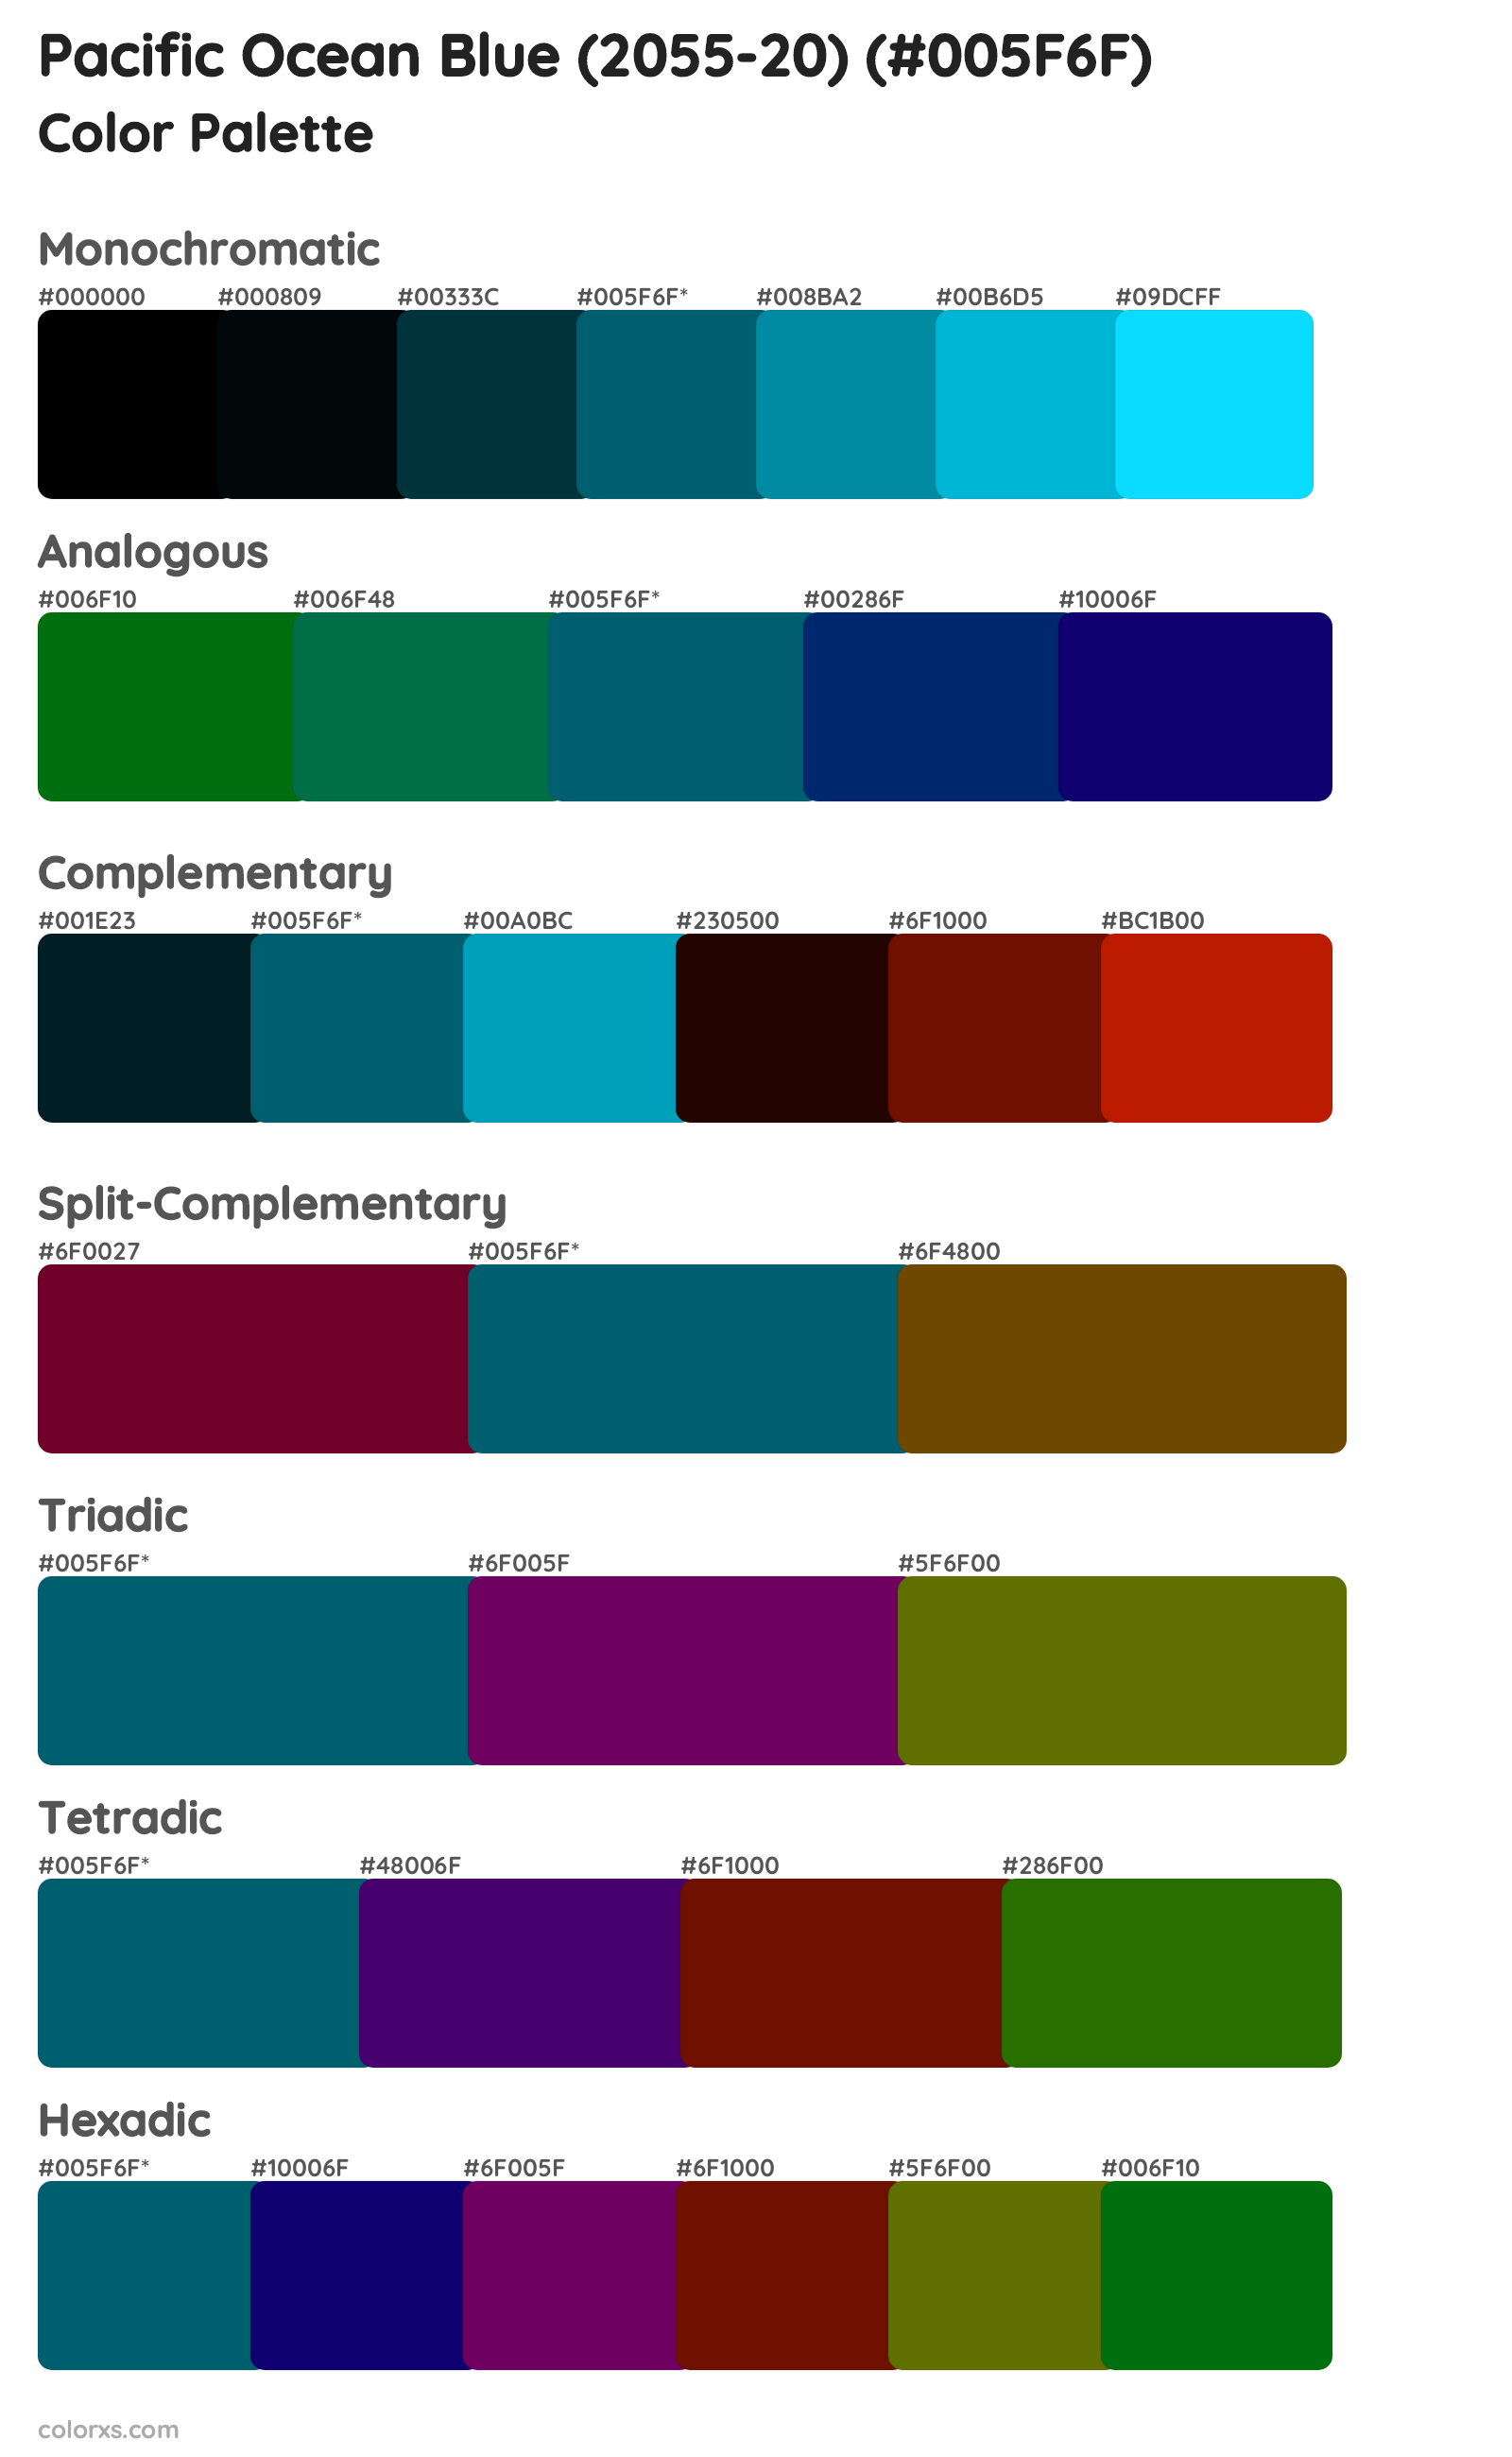 Pacific Ocean Blue (2055-20) Color Scheme Palettes